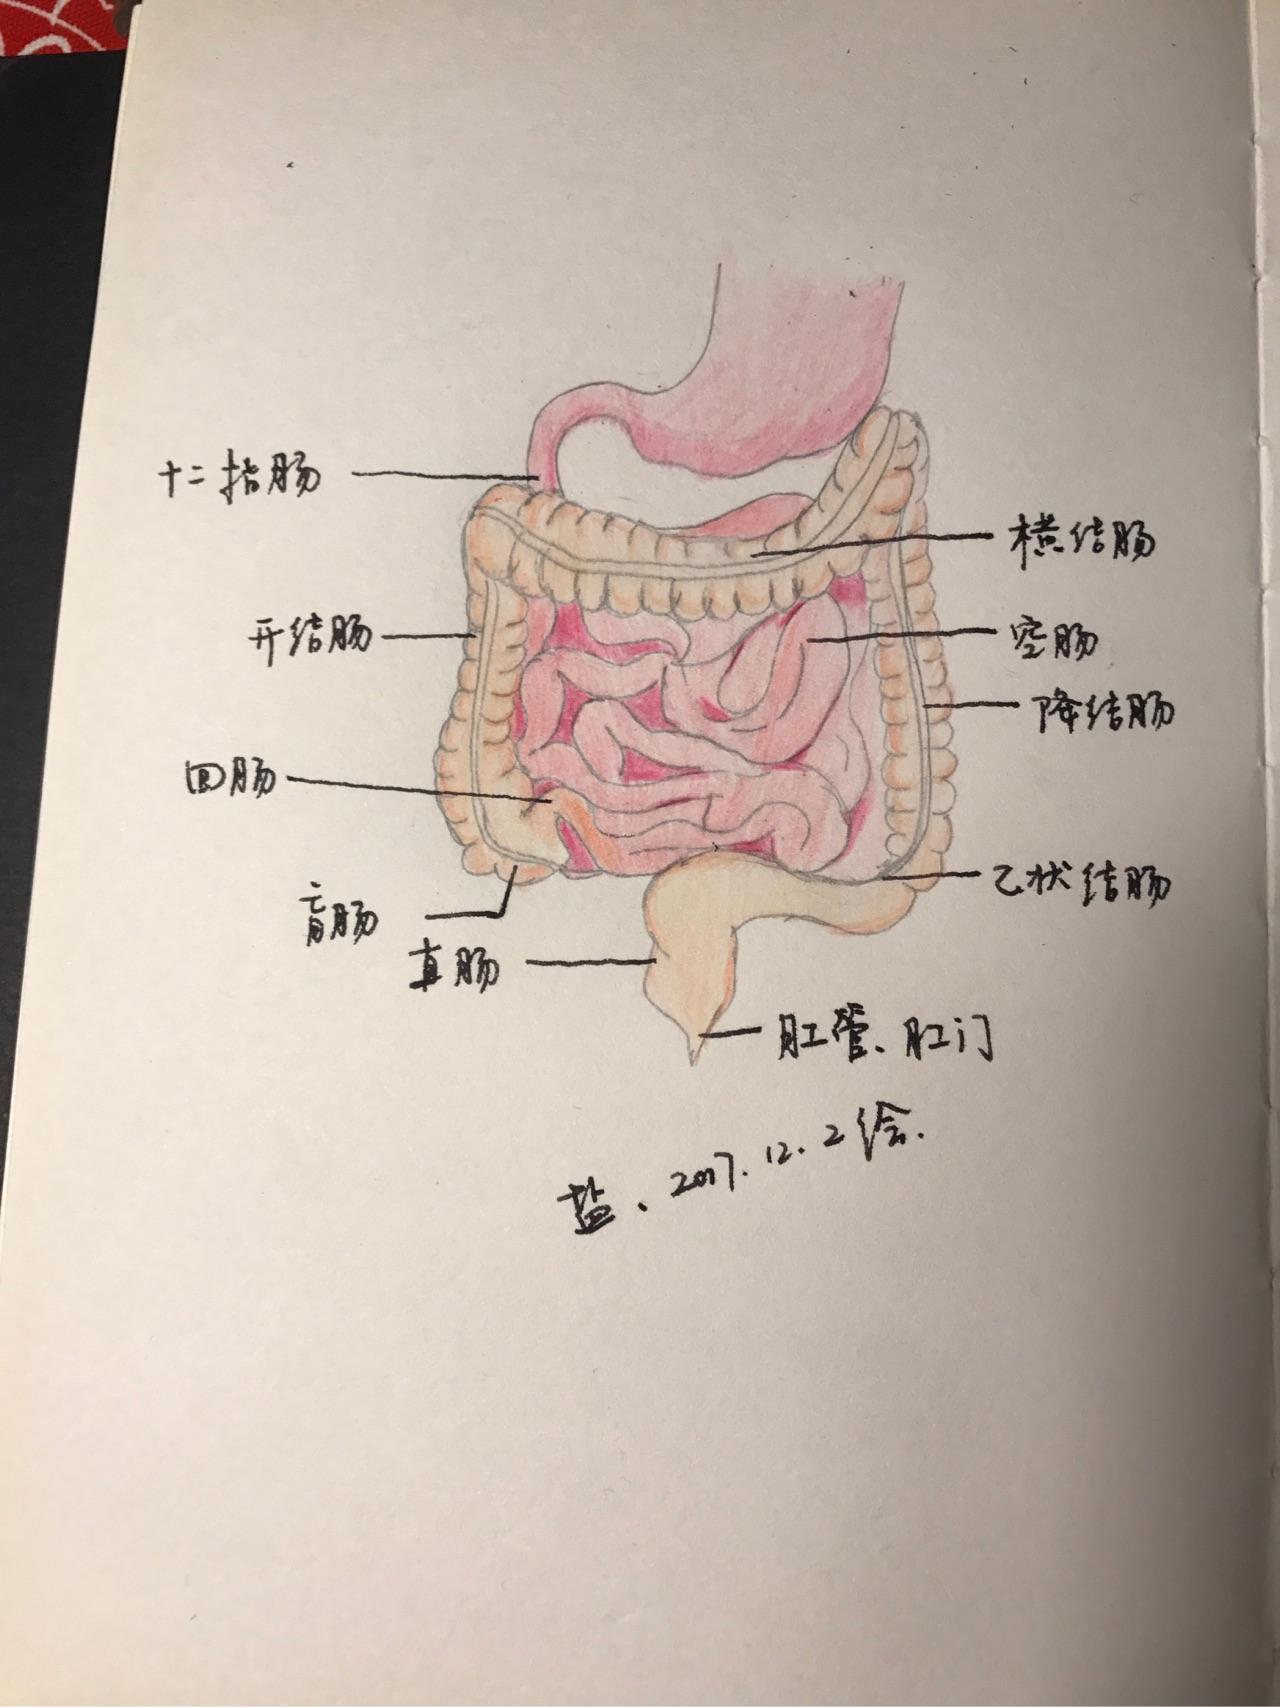 小肠回肠的位置图片图片